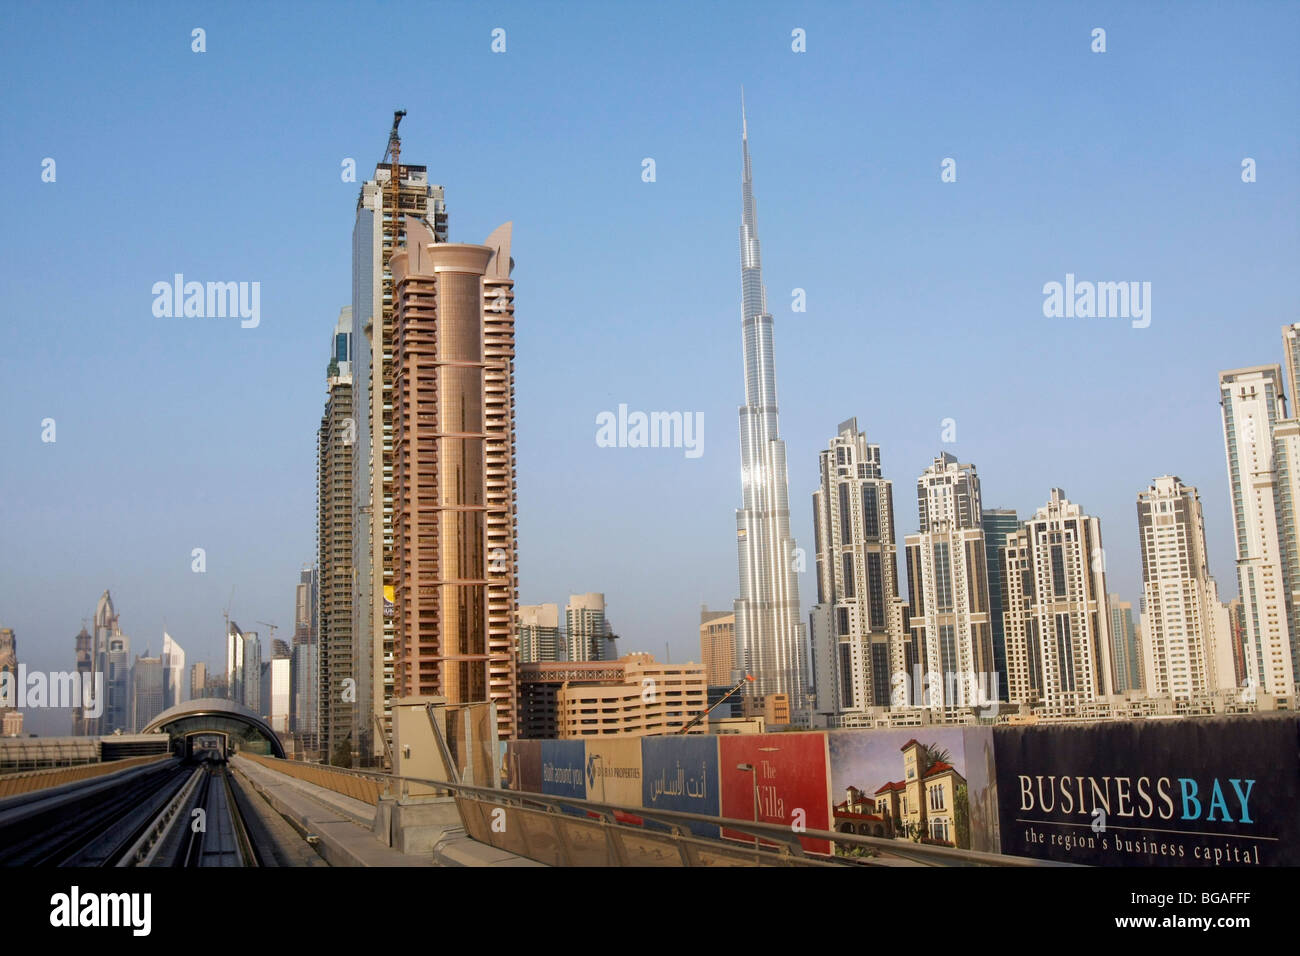 Hochhäuser im Financial Center in Dubai. Die hohe schmalere Gebäude ist der Burj Tower, höchstes Gebäude der Welt. Stockfoto